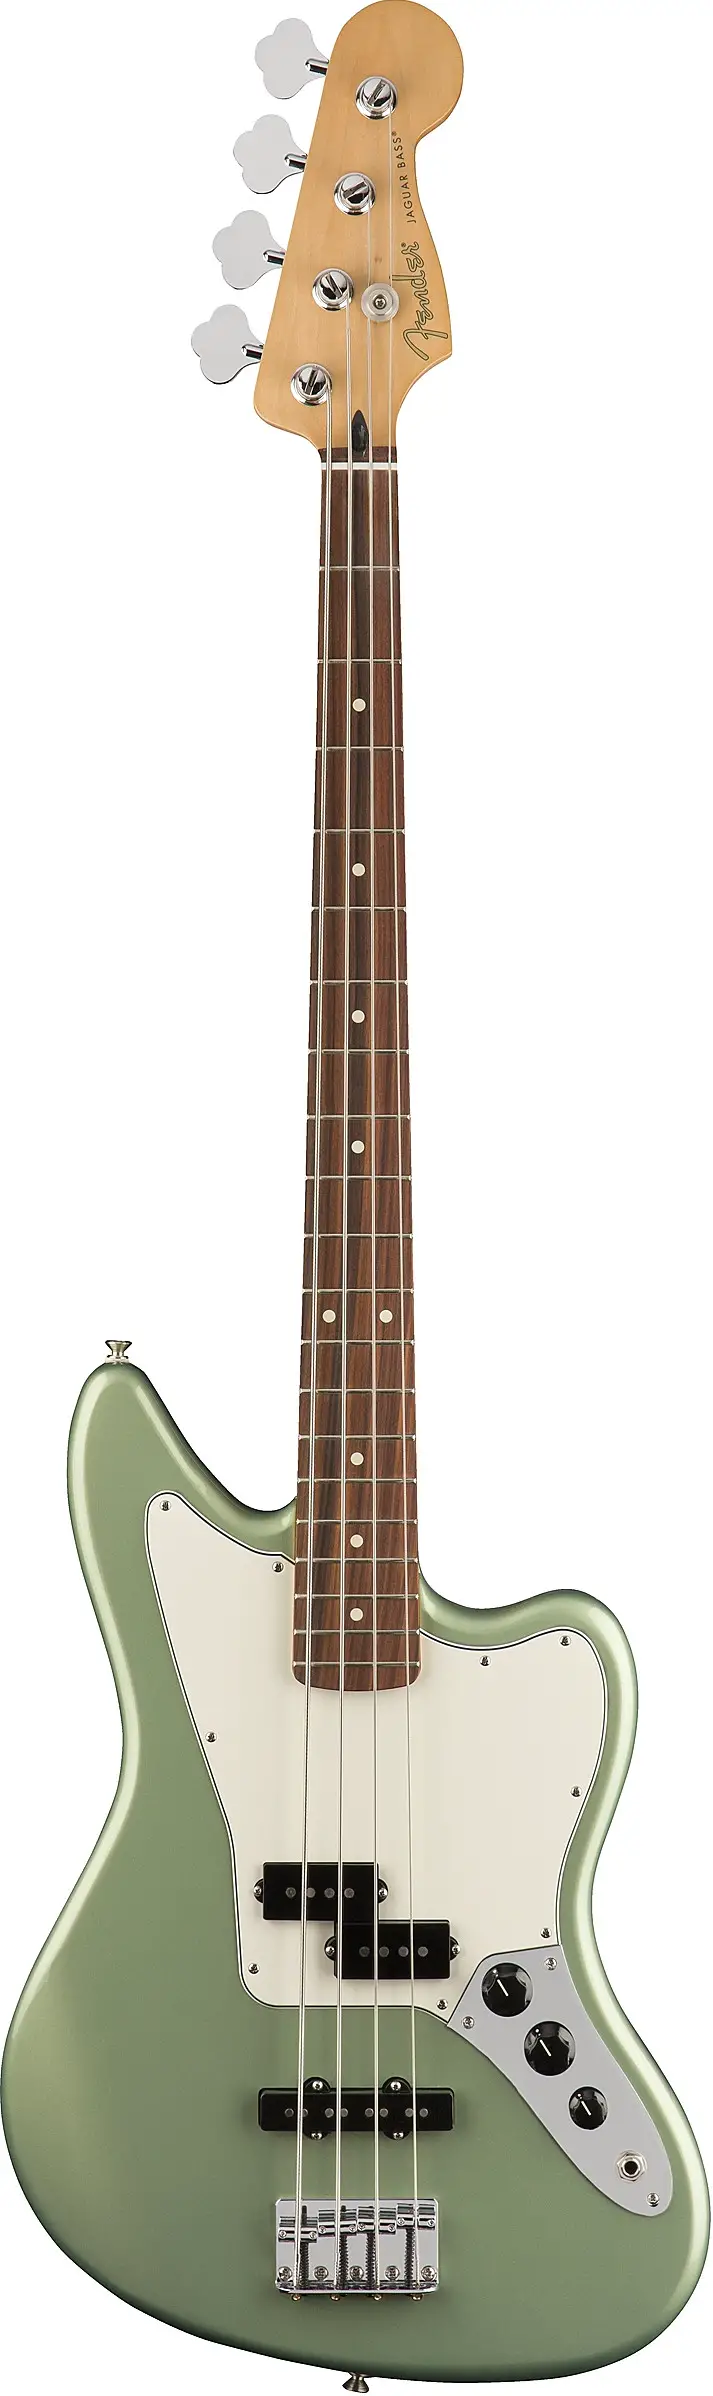 Player Jaguar Bass by Fender